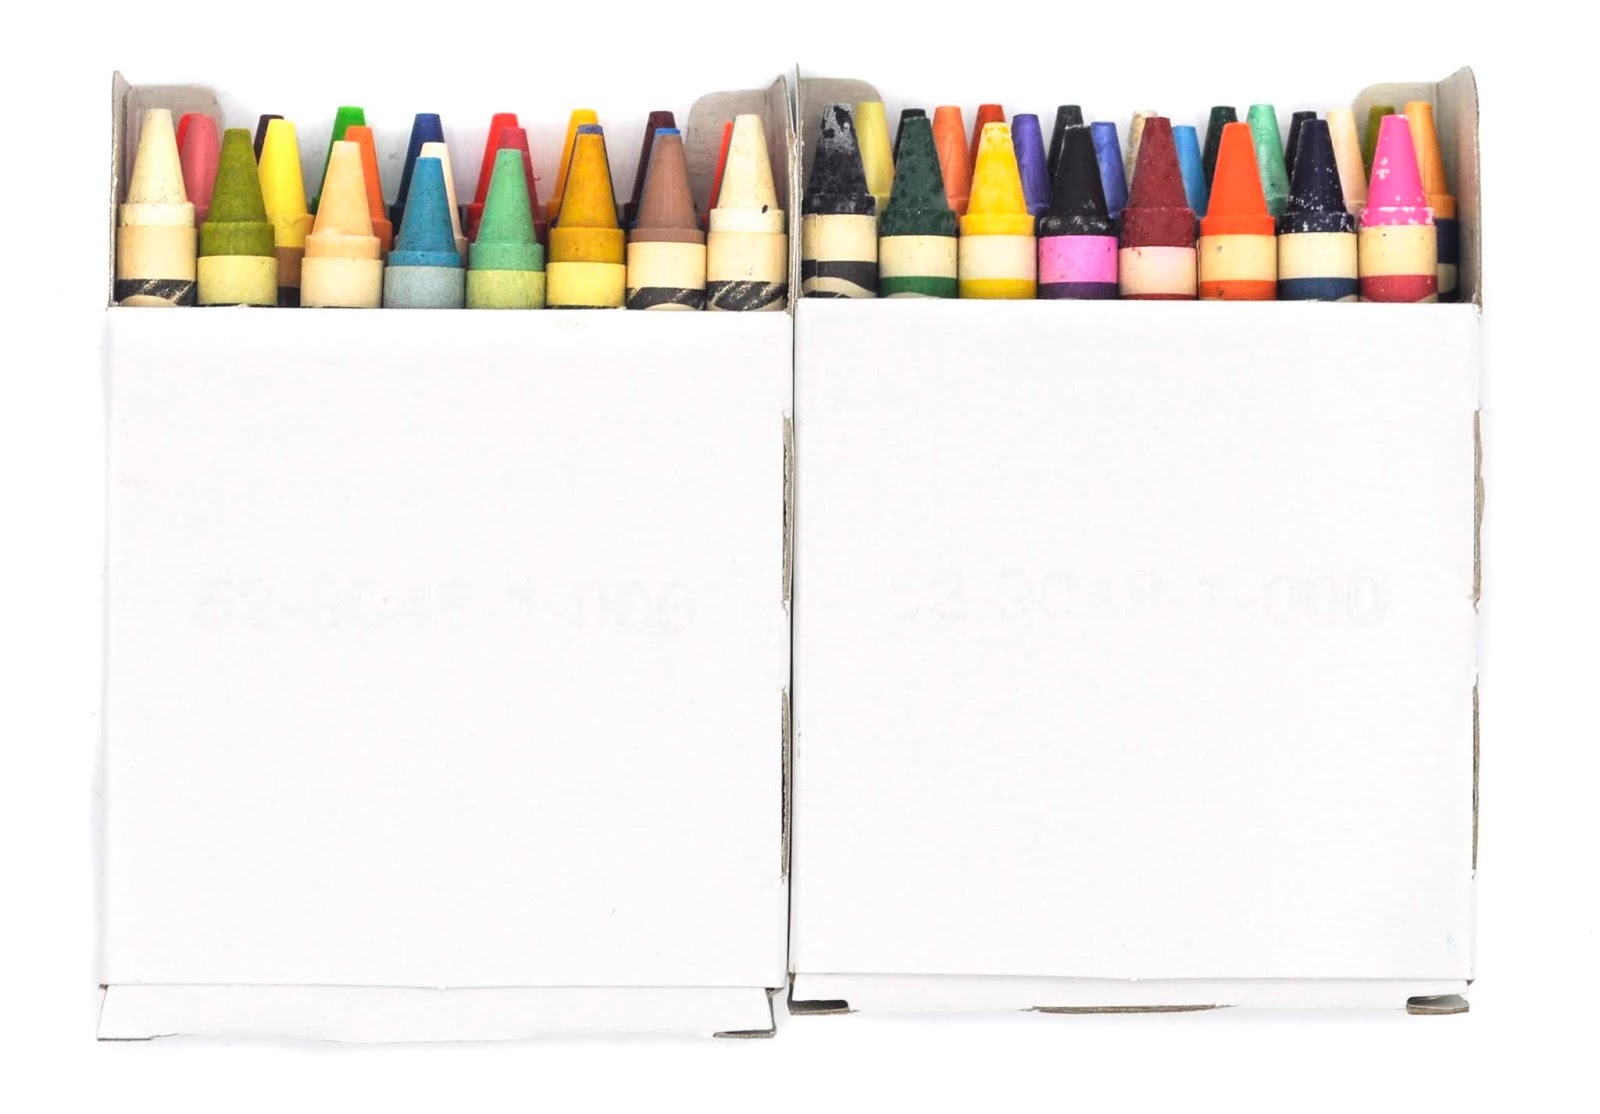 Crayola Crayons 48 count – S&D Kids